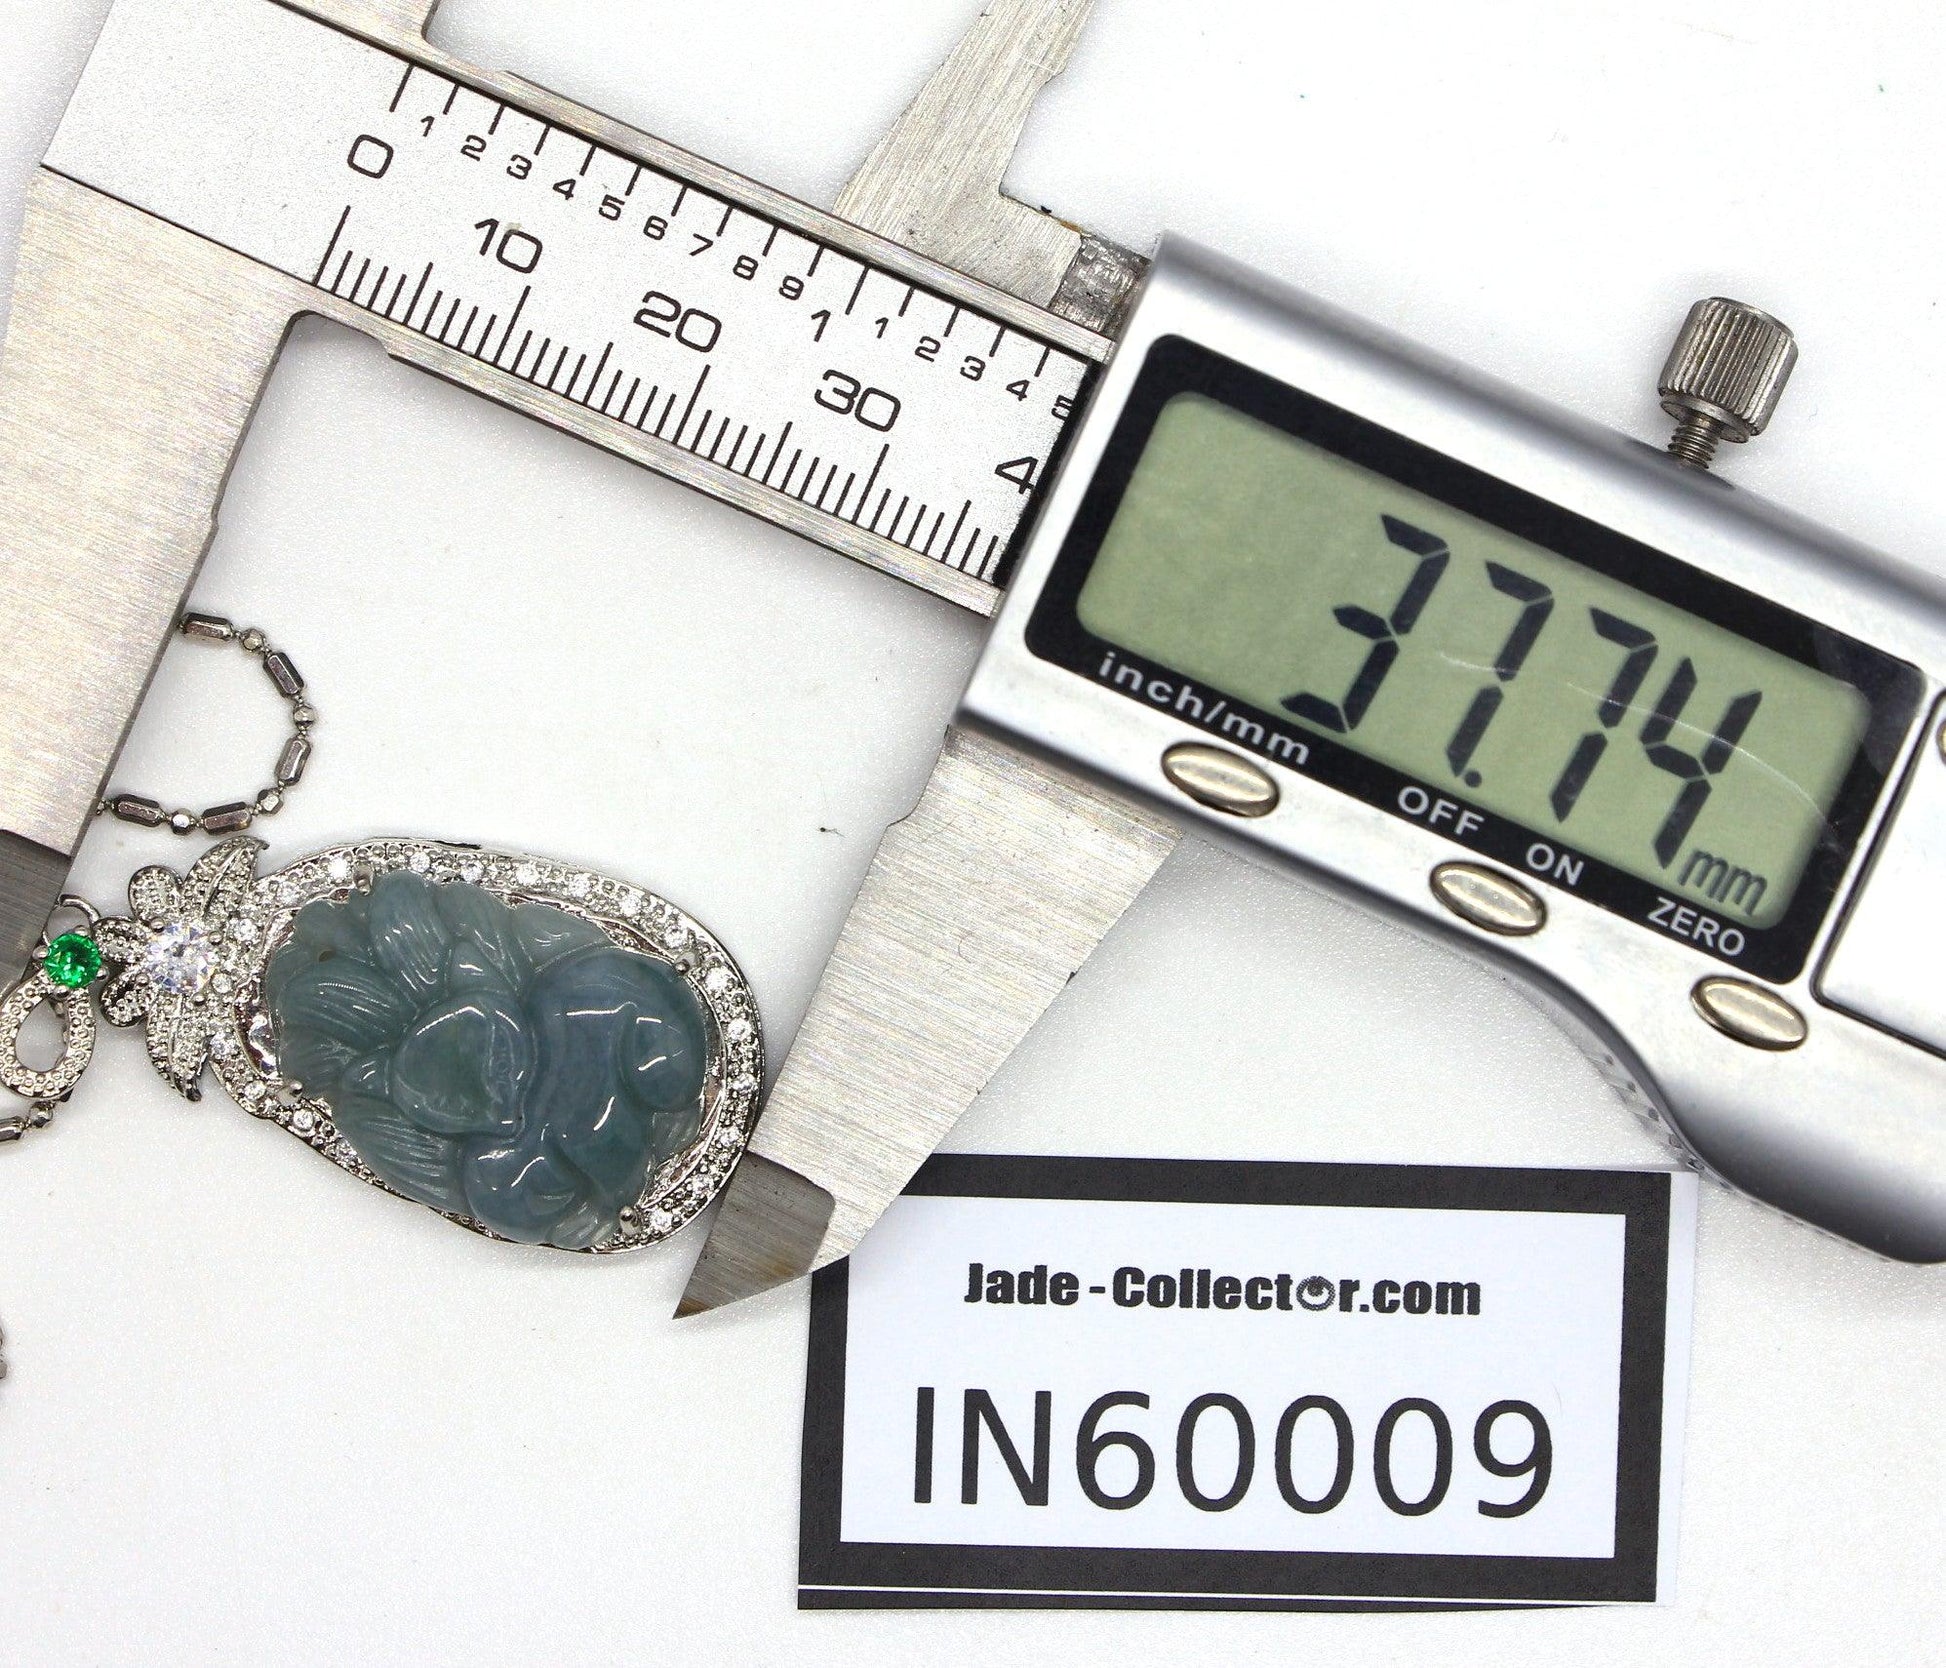 Type A Jadeite Jade Pendants Inlay Series in60009 - Jade-collector.com